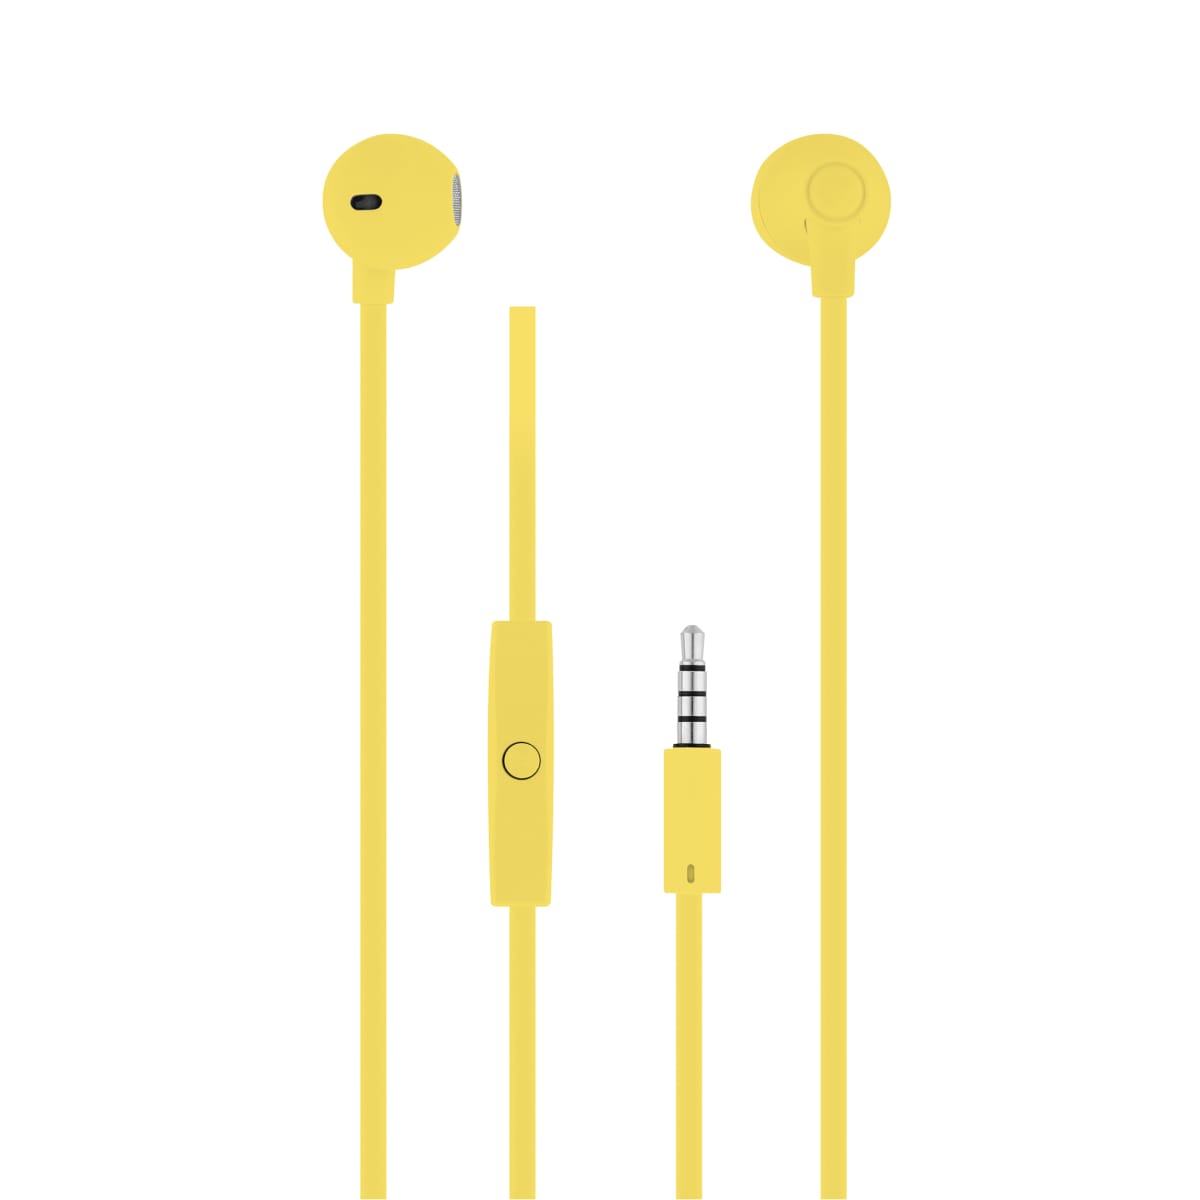 Wired earphones SWEET jack yellow